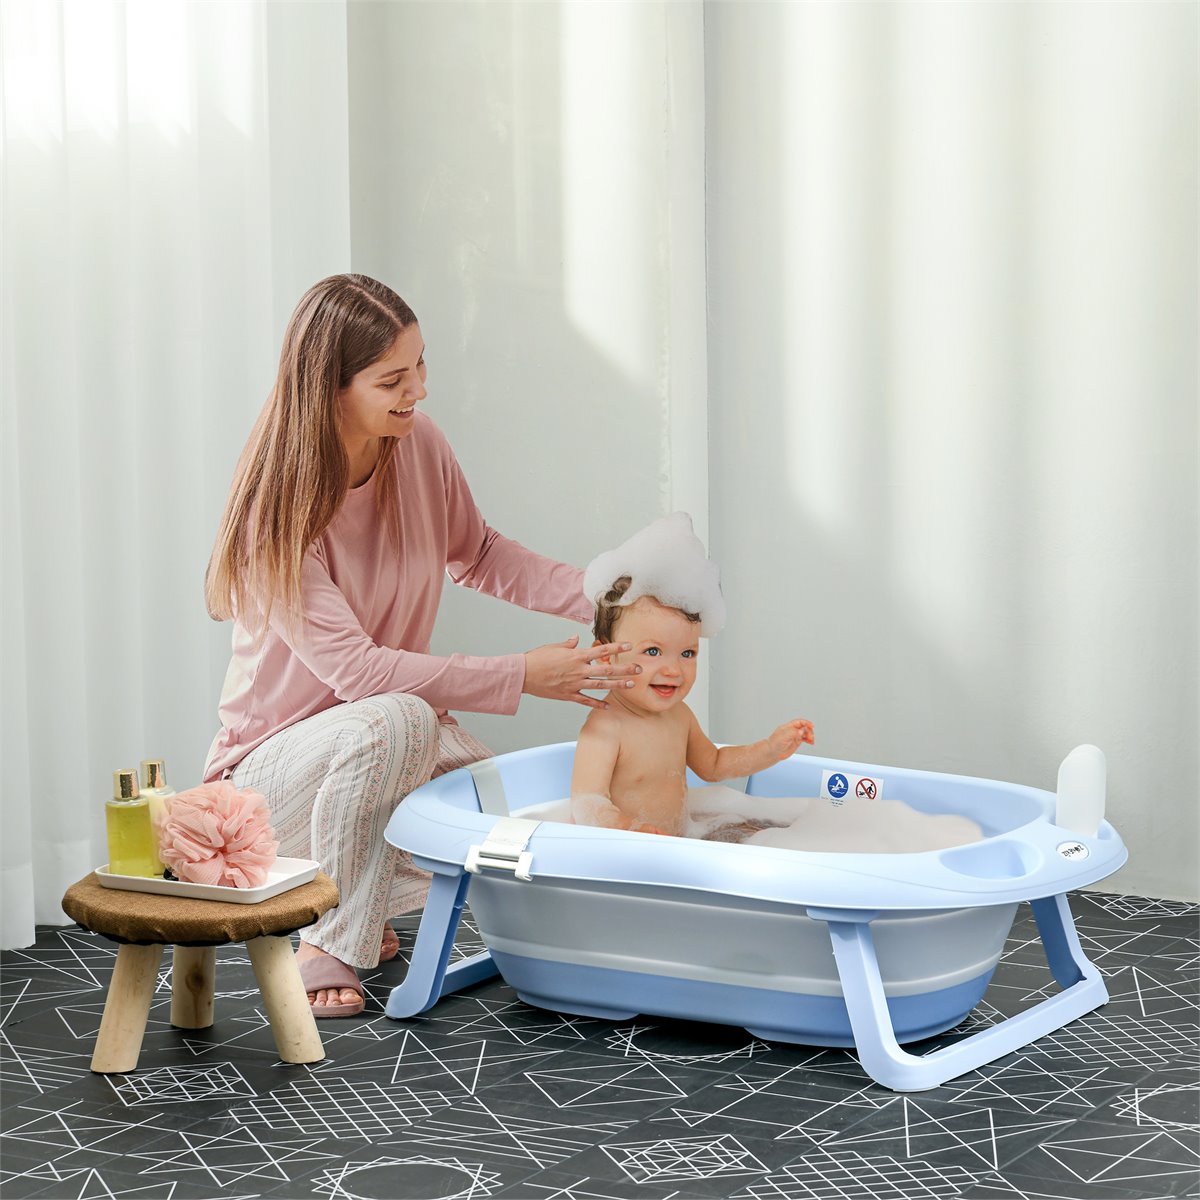 Cinco bañeras con cambiador baratas para tu bebé